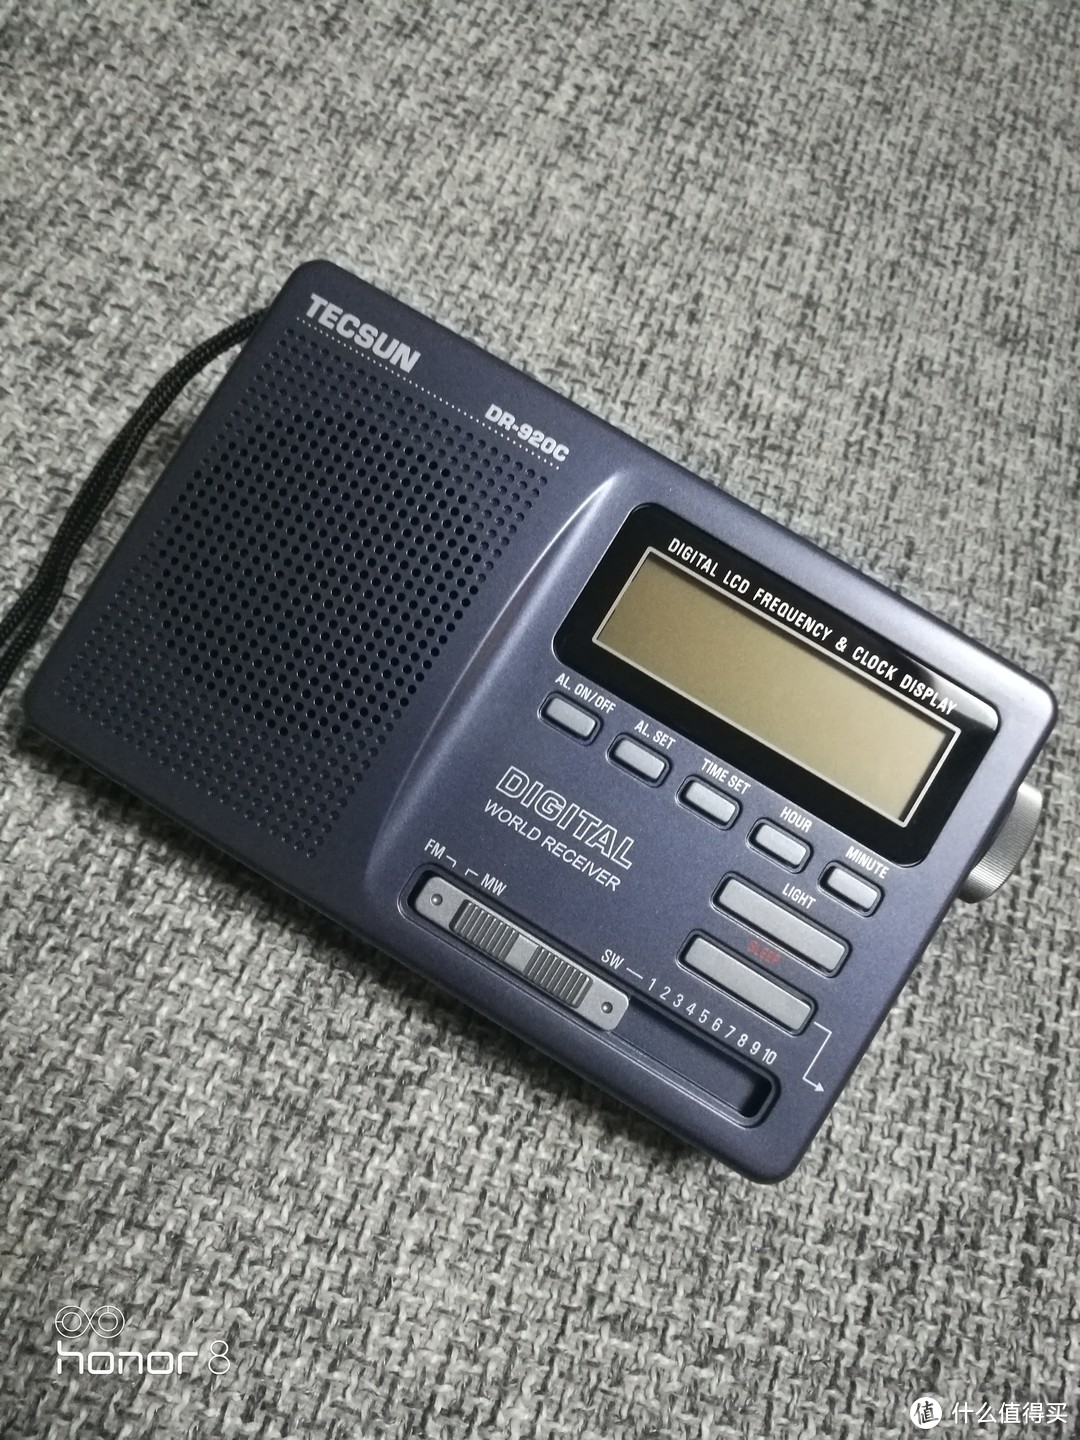 德生（Tecsun）DR-920C  全波段 收音机 怀旧来一波